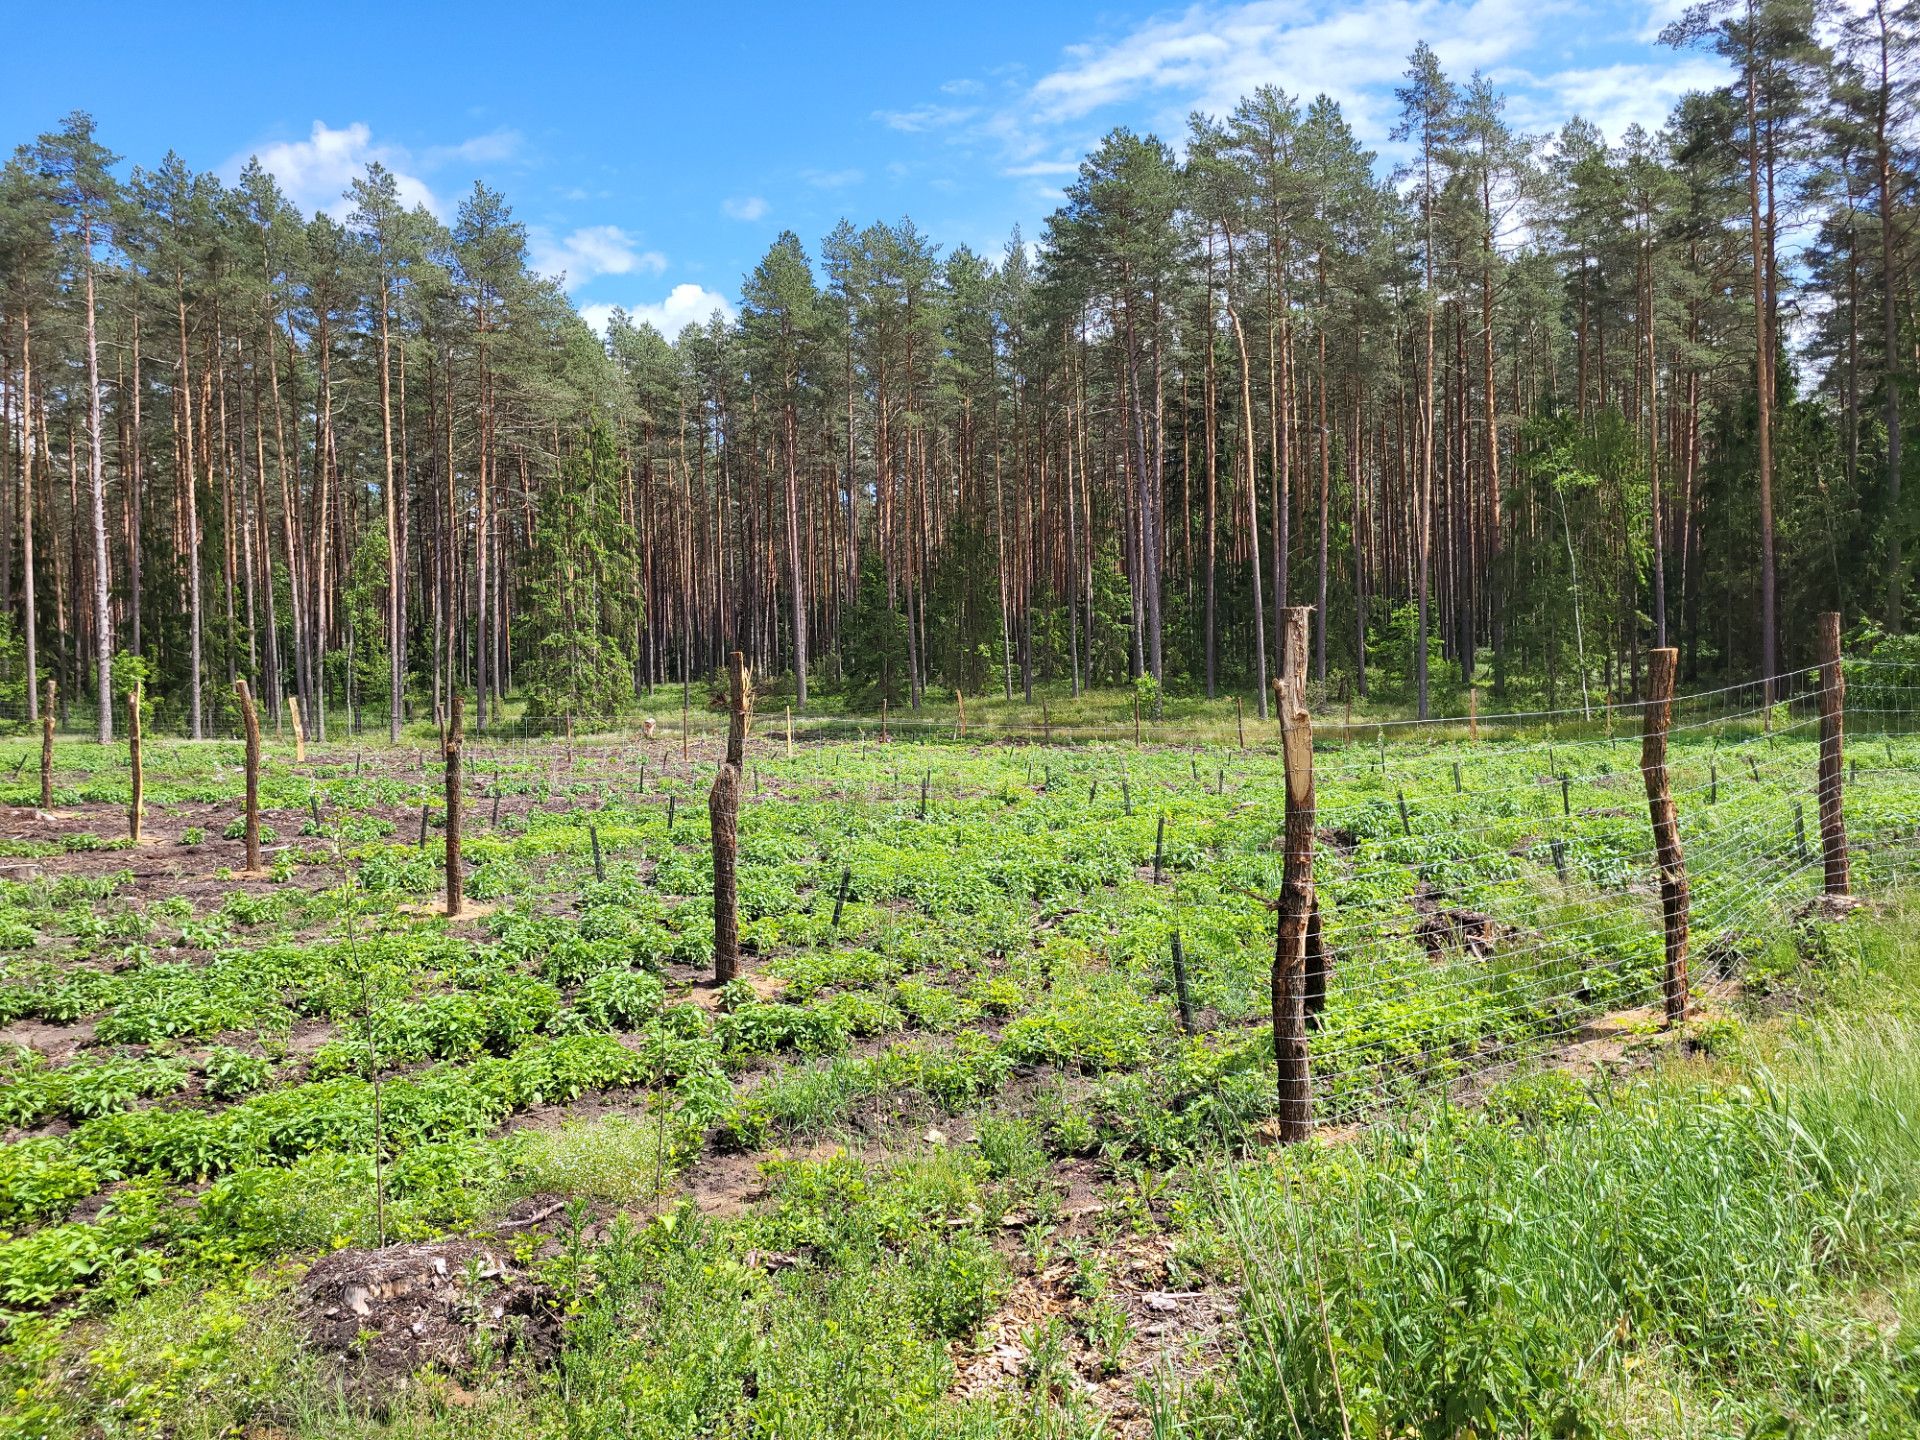 Remizy-sady zosrały ogrodzone przy użyciu siatki leśnej- fot. Adam Sieńko